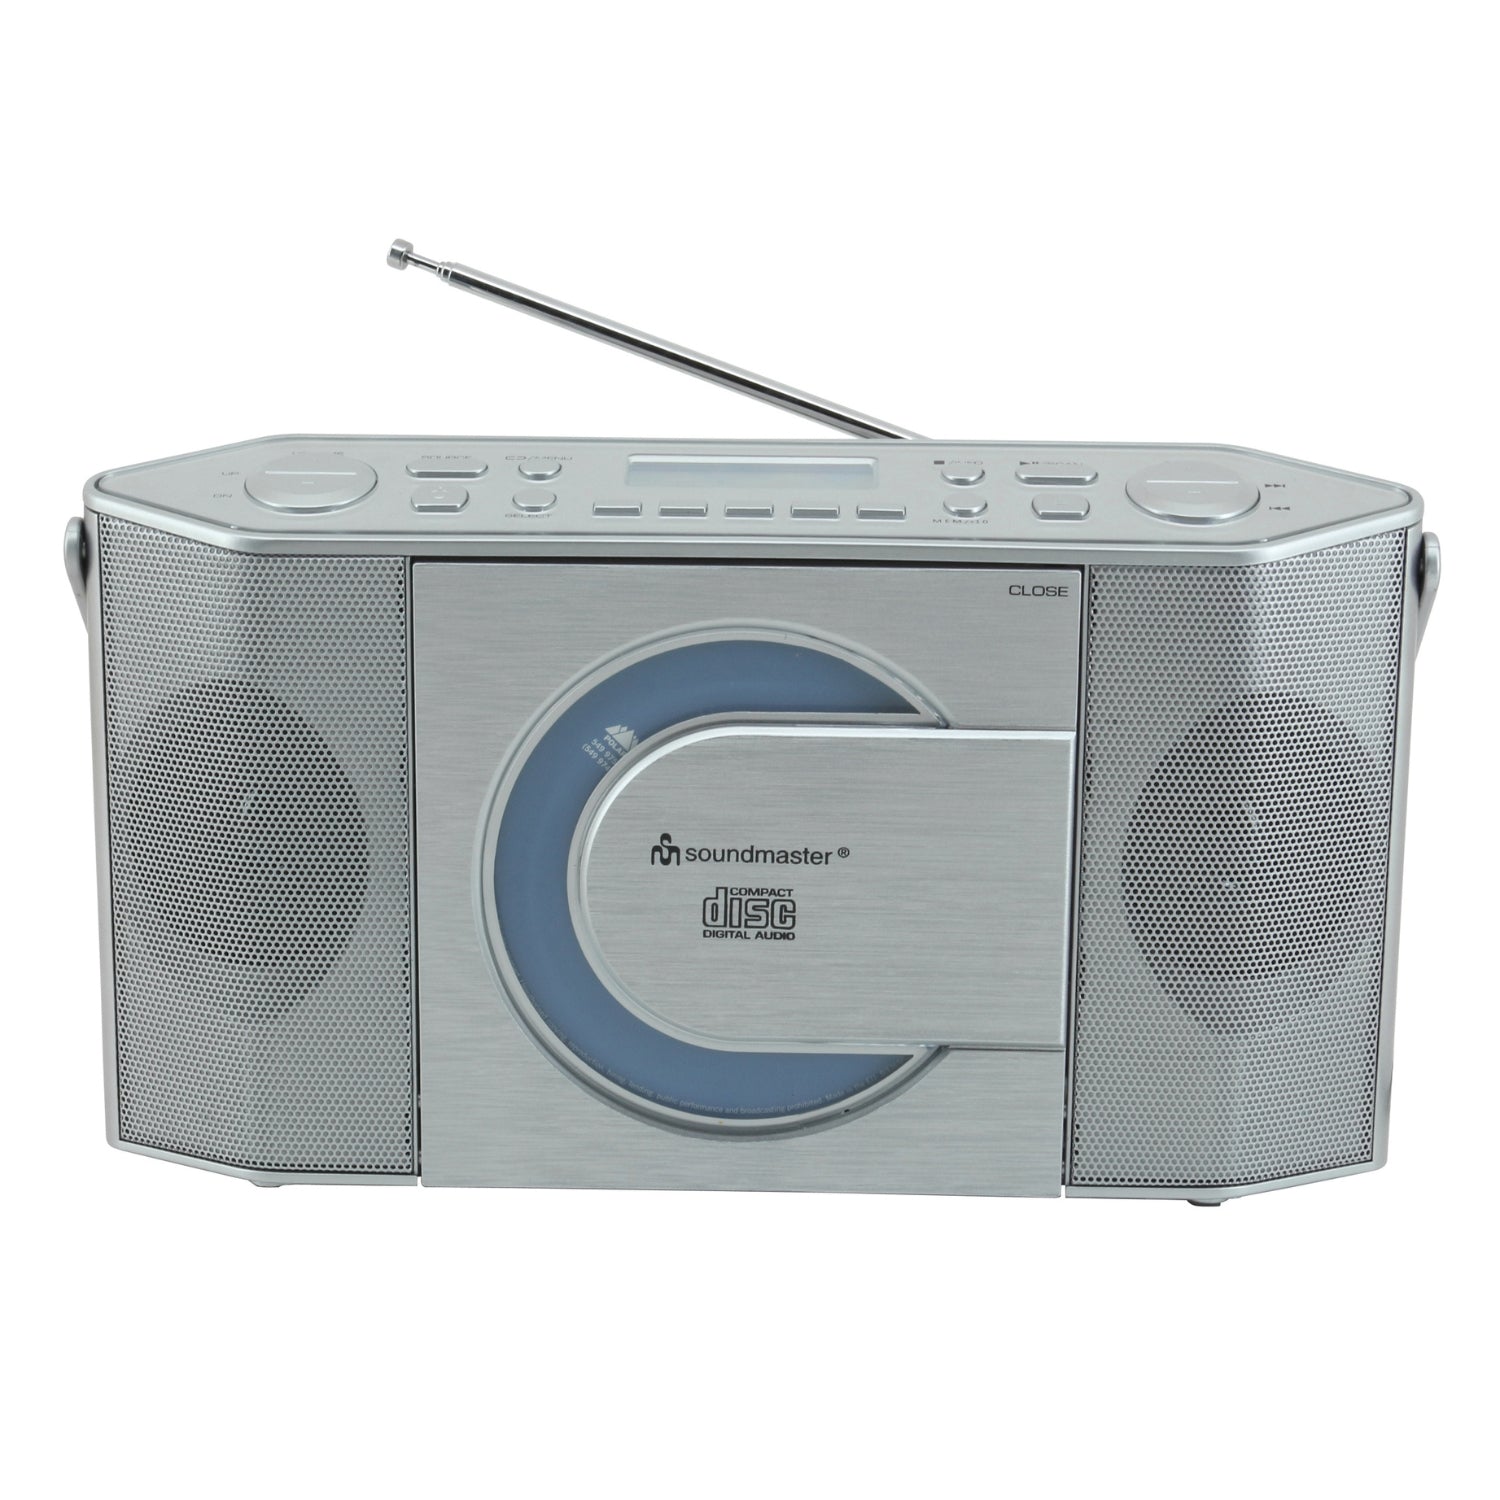 B-ITEM Soundmaster RCD1770SI enregistreur radio numérique DAB + avec USB et lecteur CD casque MP3 horloge